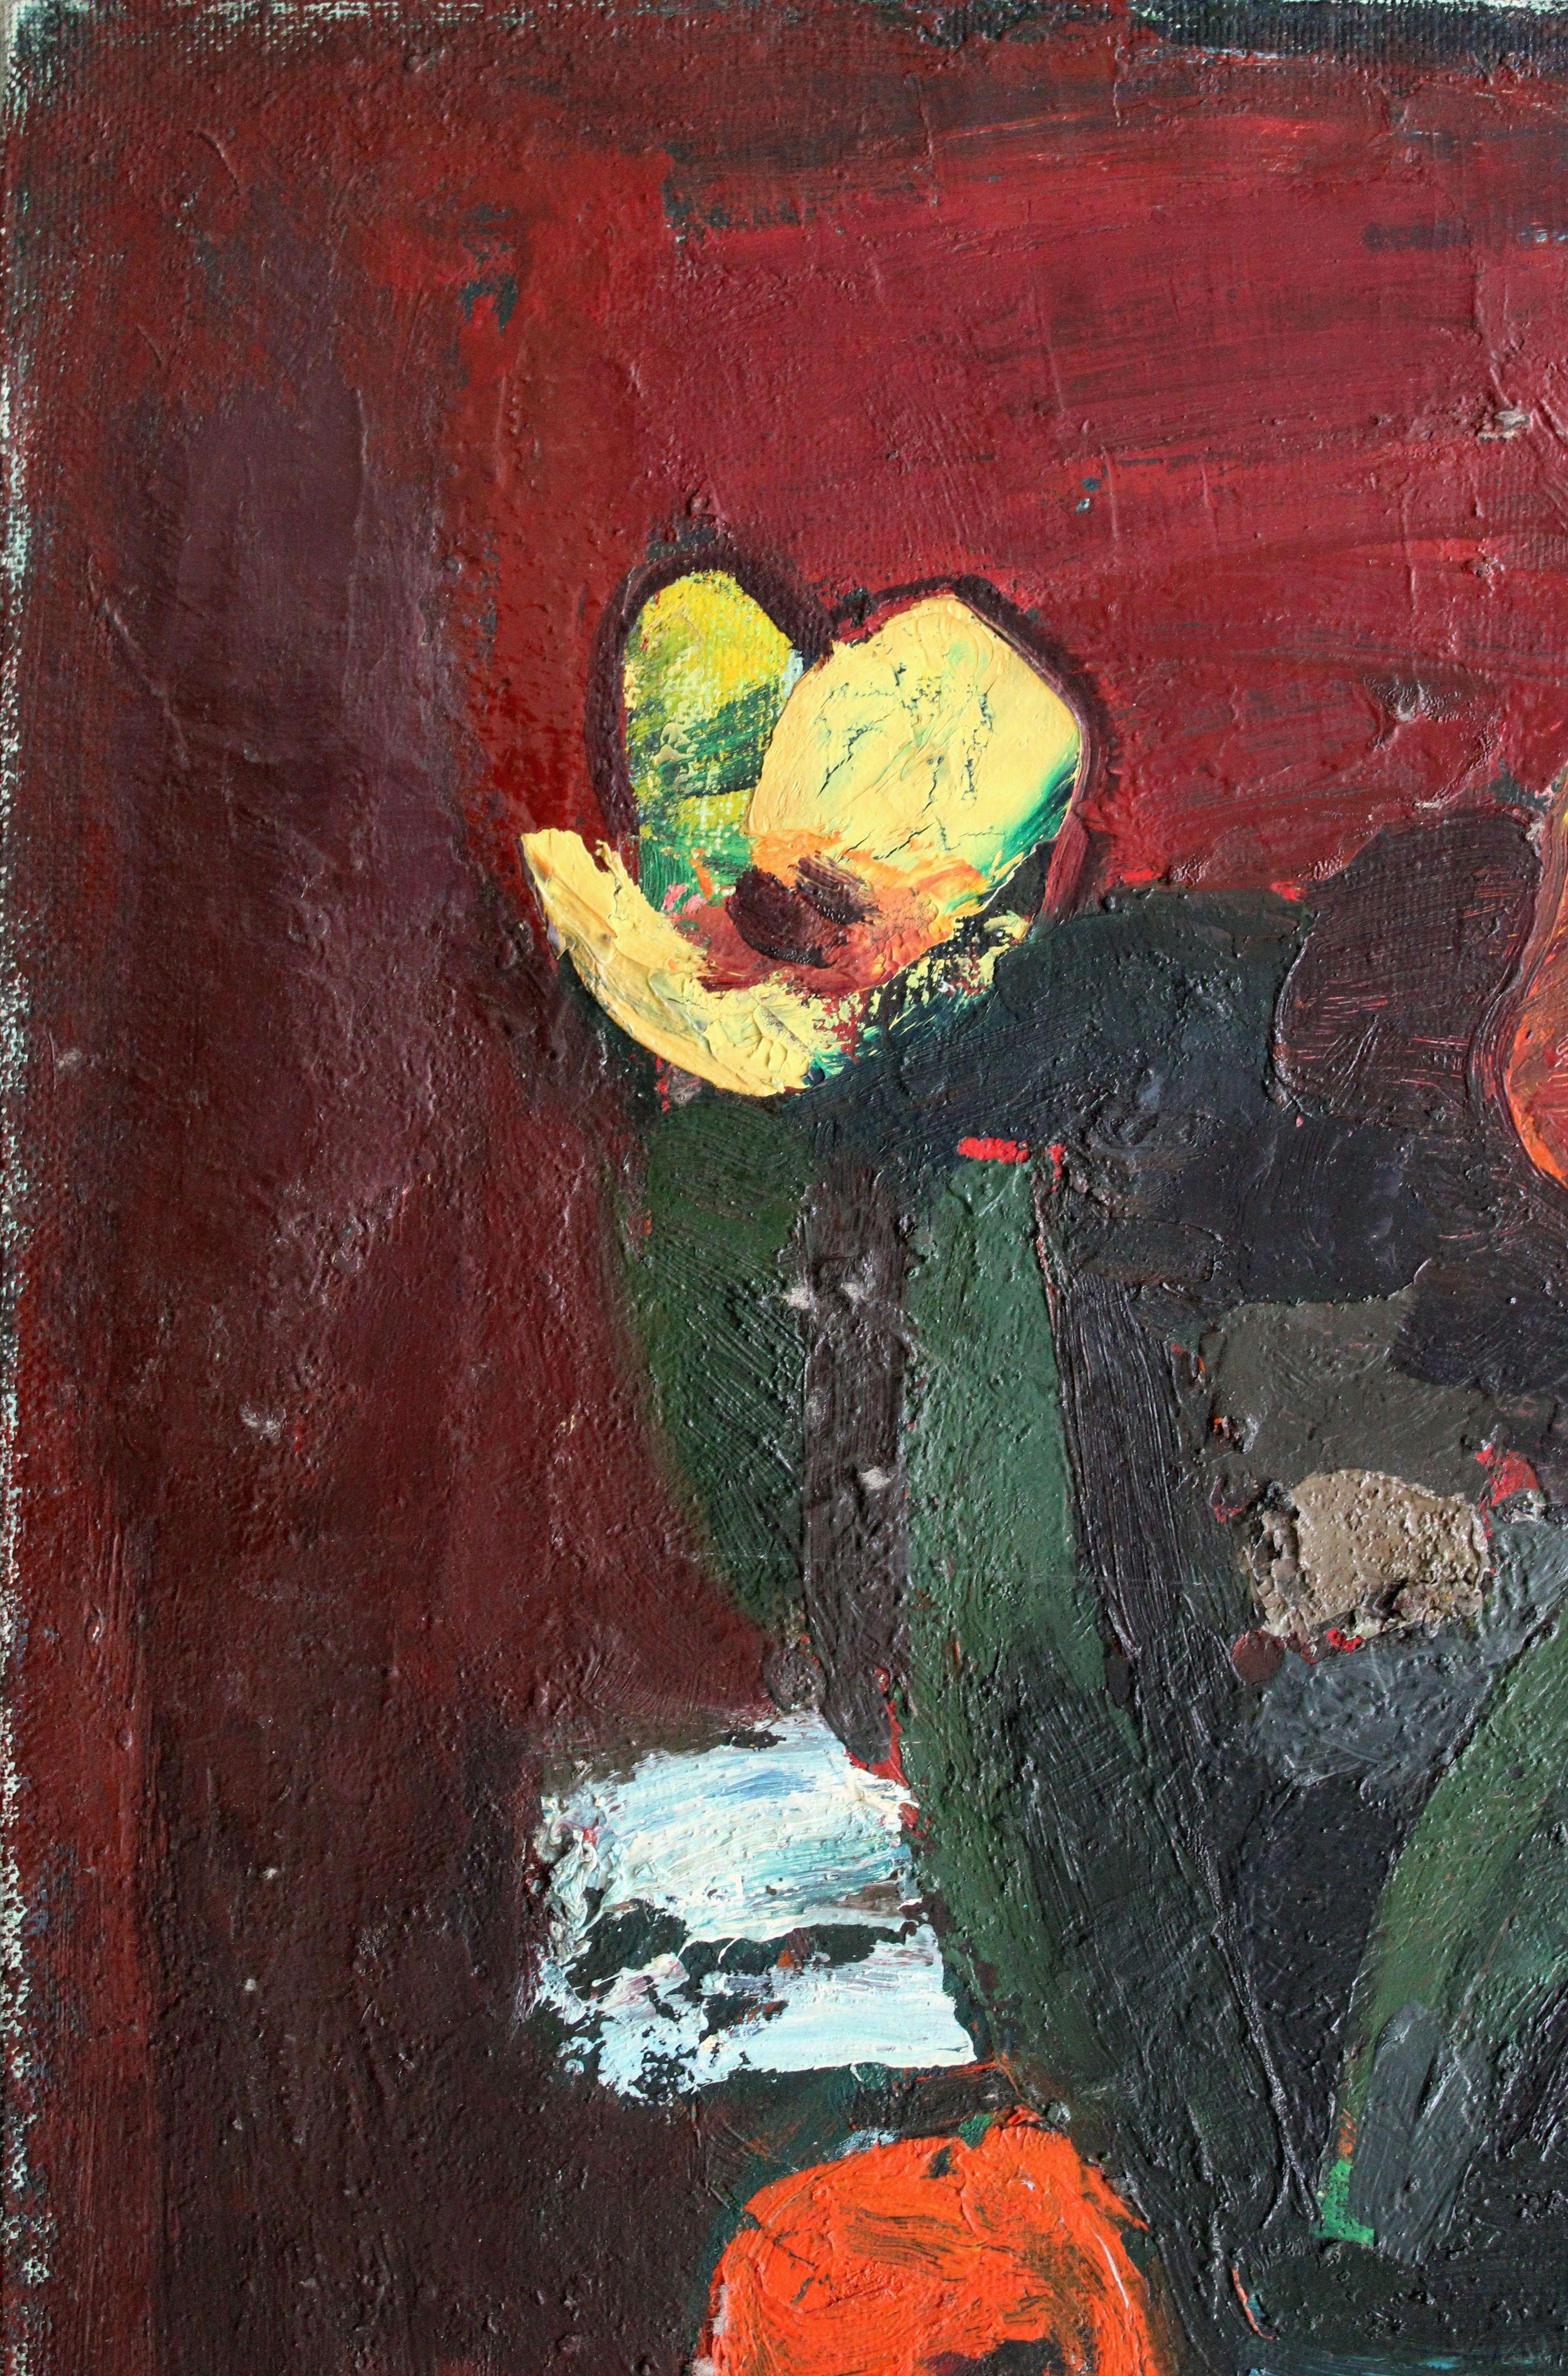 Fleurs. Toile, carton, huile, 69 x 50 cm

Alexandre Rodin (1922-2001)
Peintre Né dans une famille d'agriculteurs. Épouse Rasma Lace - érudite en art. Il a étudié à l'école d'art de Stalingrad, à l'école d'art de Saratov, et a obtenu un diplôme du